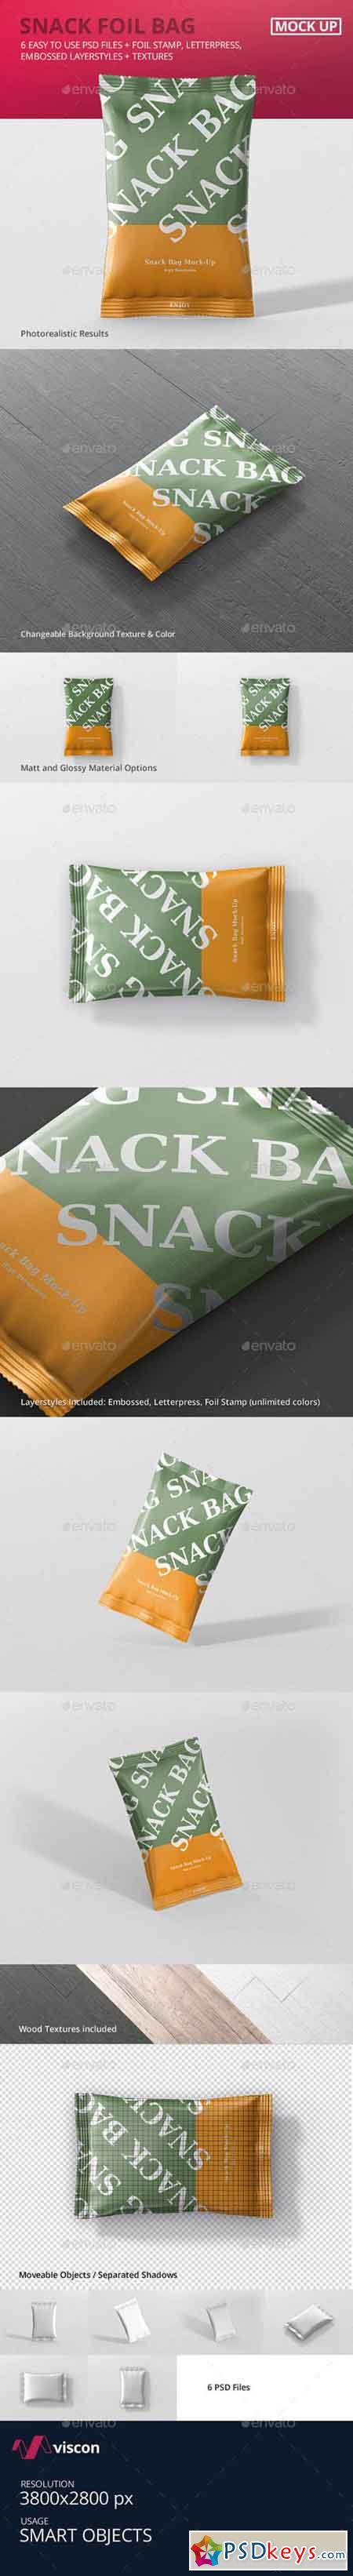 Snack Foil Bag Mockup 20230164